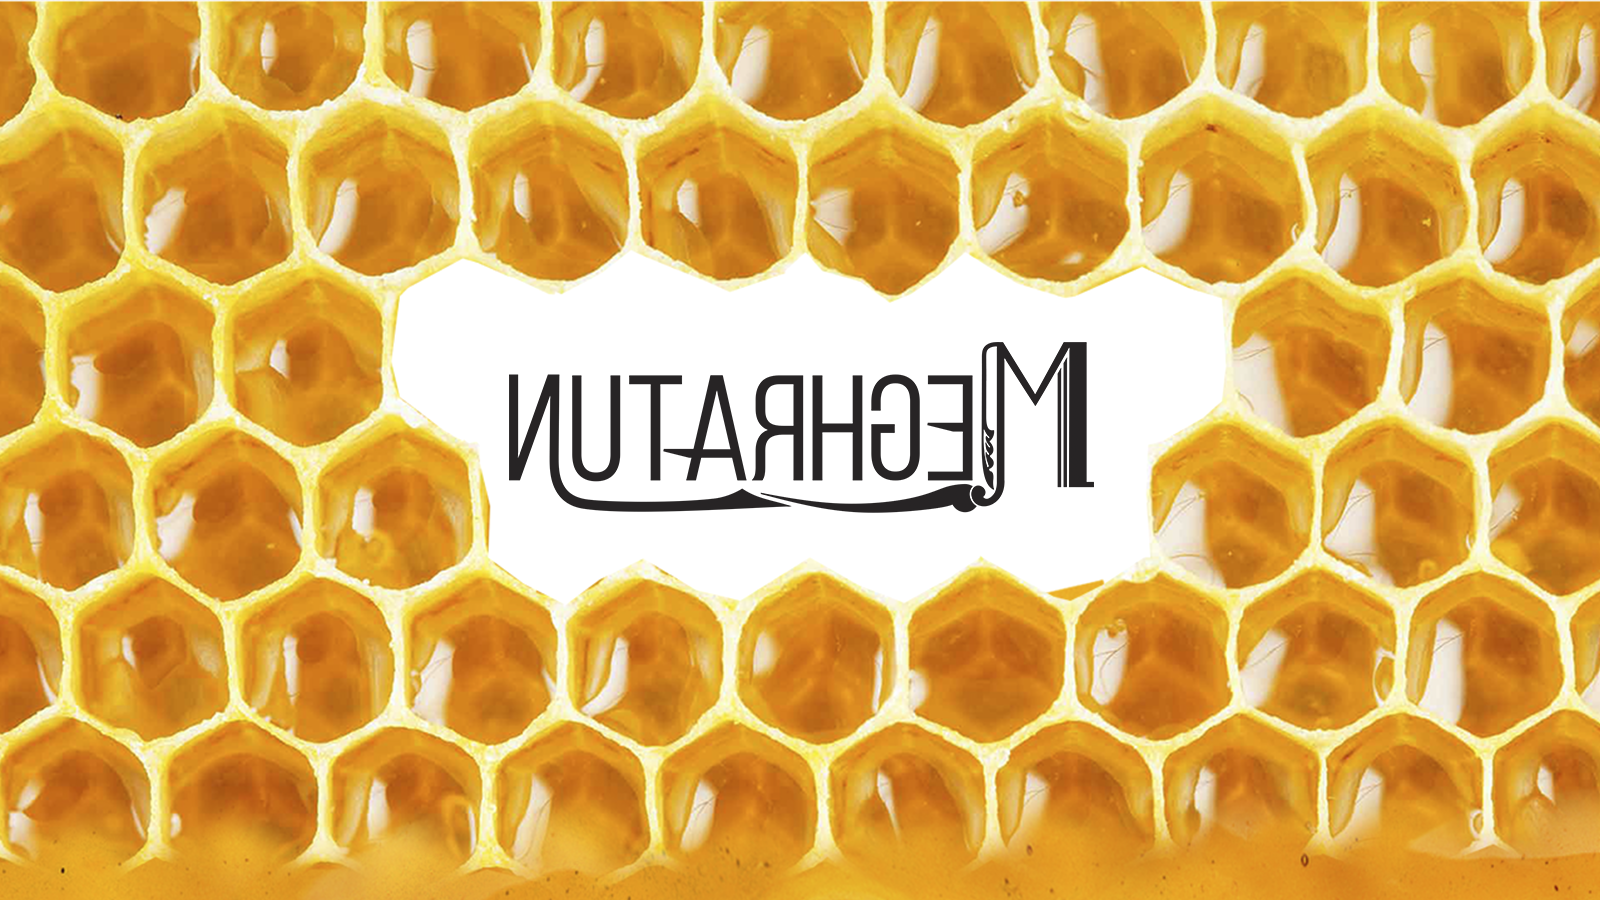 国外蜂蜜品牌西安欧亿体育‧（官方）平台网站
品牌包装设计